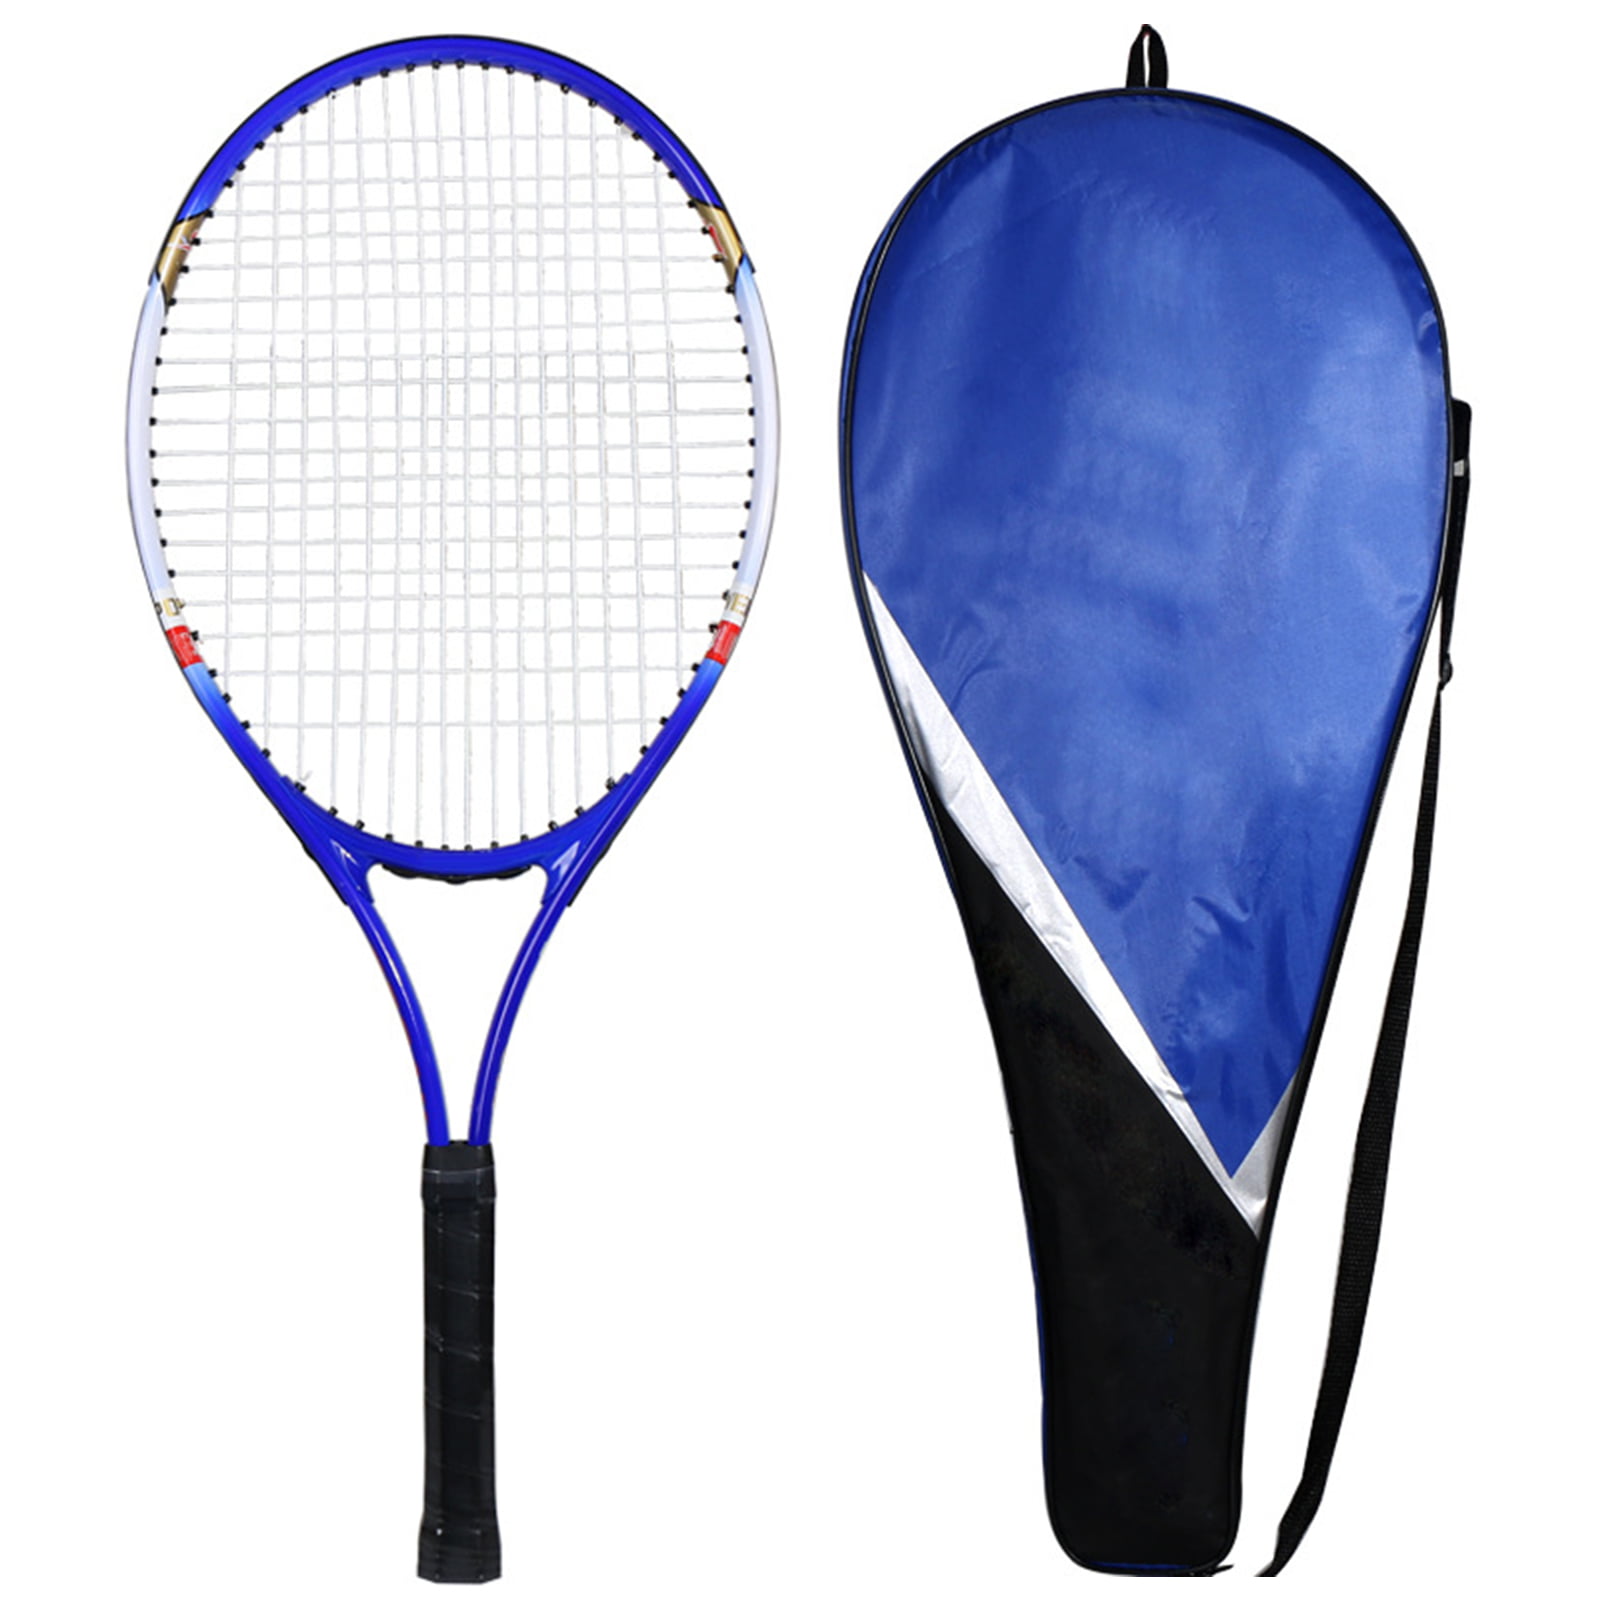 ActFu Professional Entertainment Racket Racquet for Beginners - Walmart.com